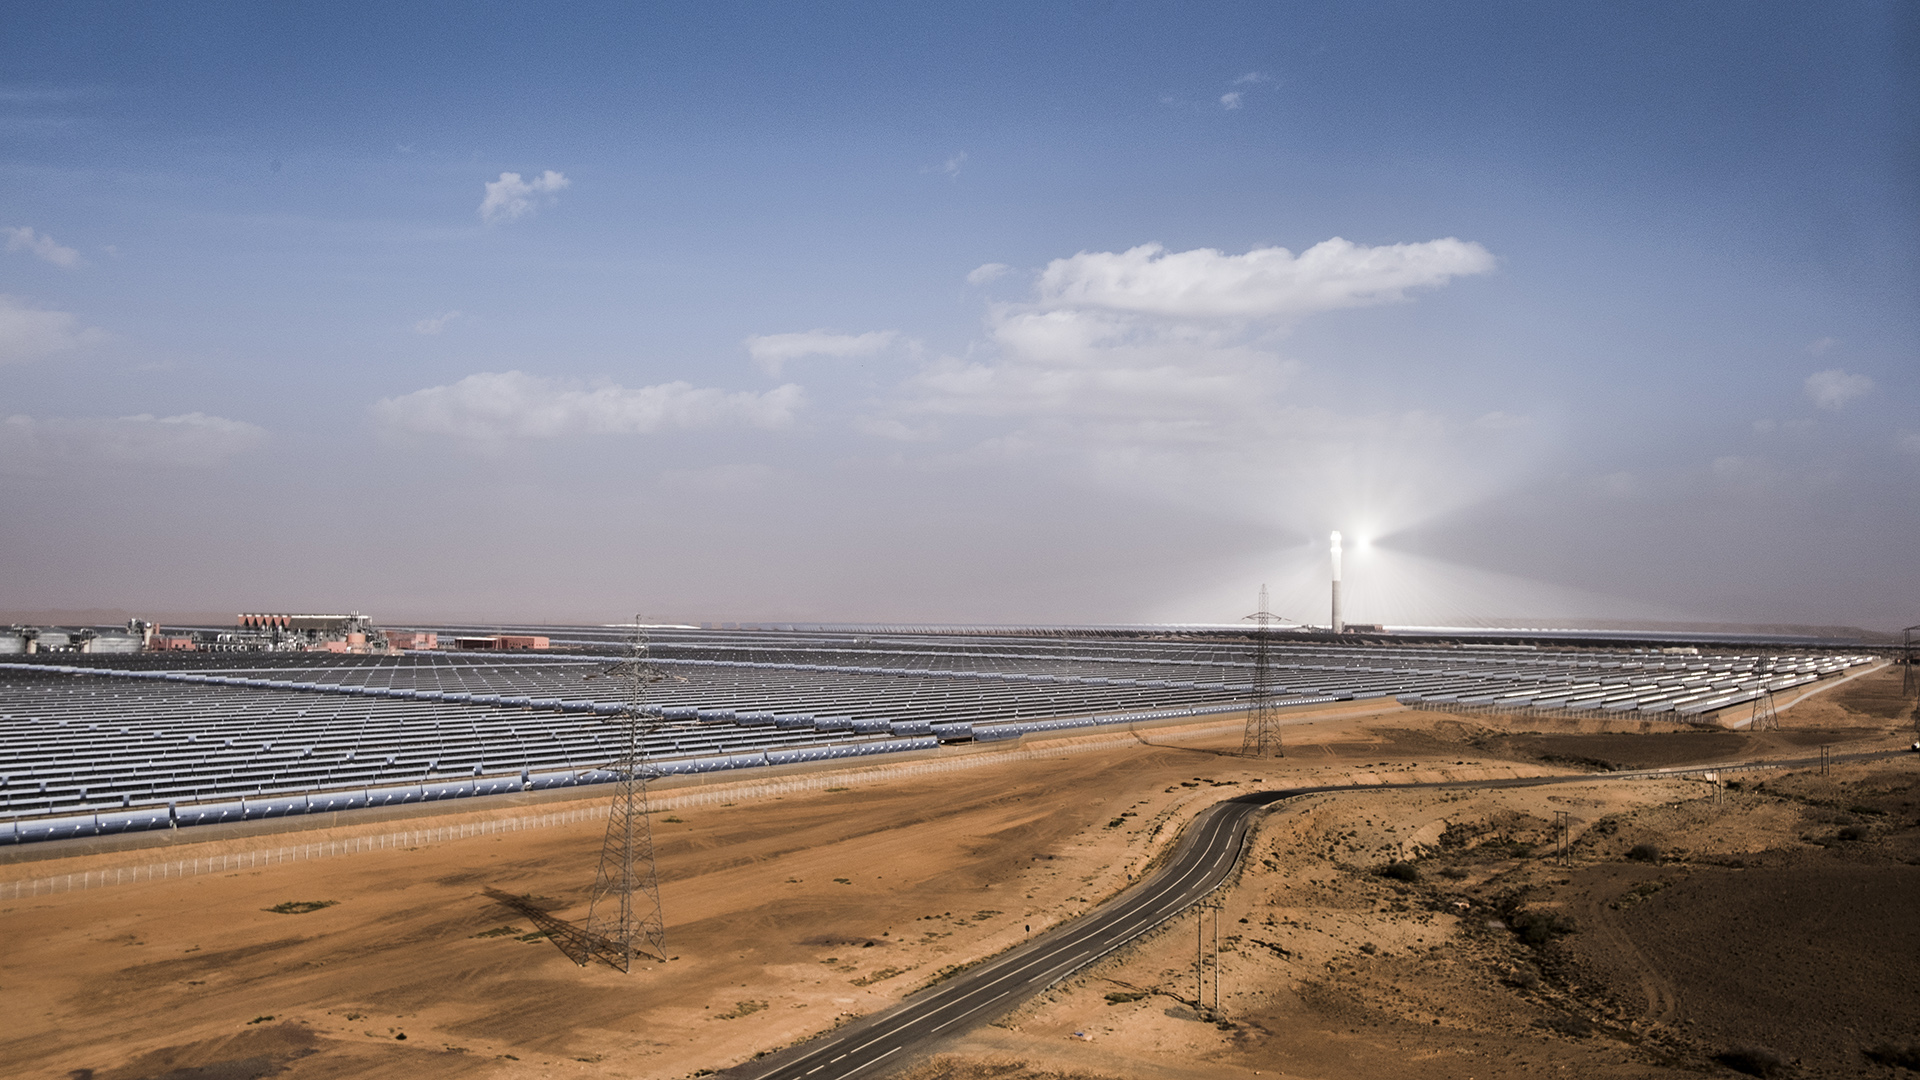 Ouarzazate Solarpark in der Sahara, Marokko | picture alliance / SVENSKA DAGBL